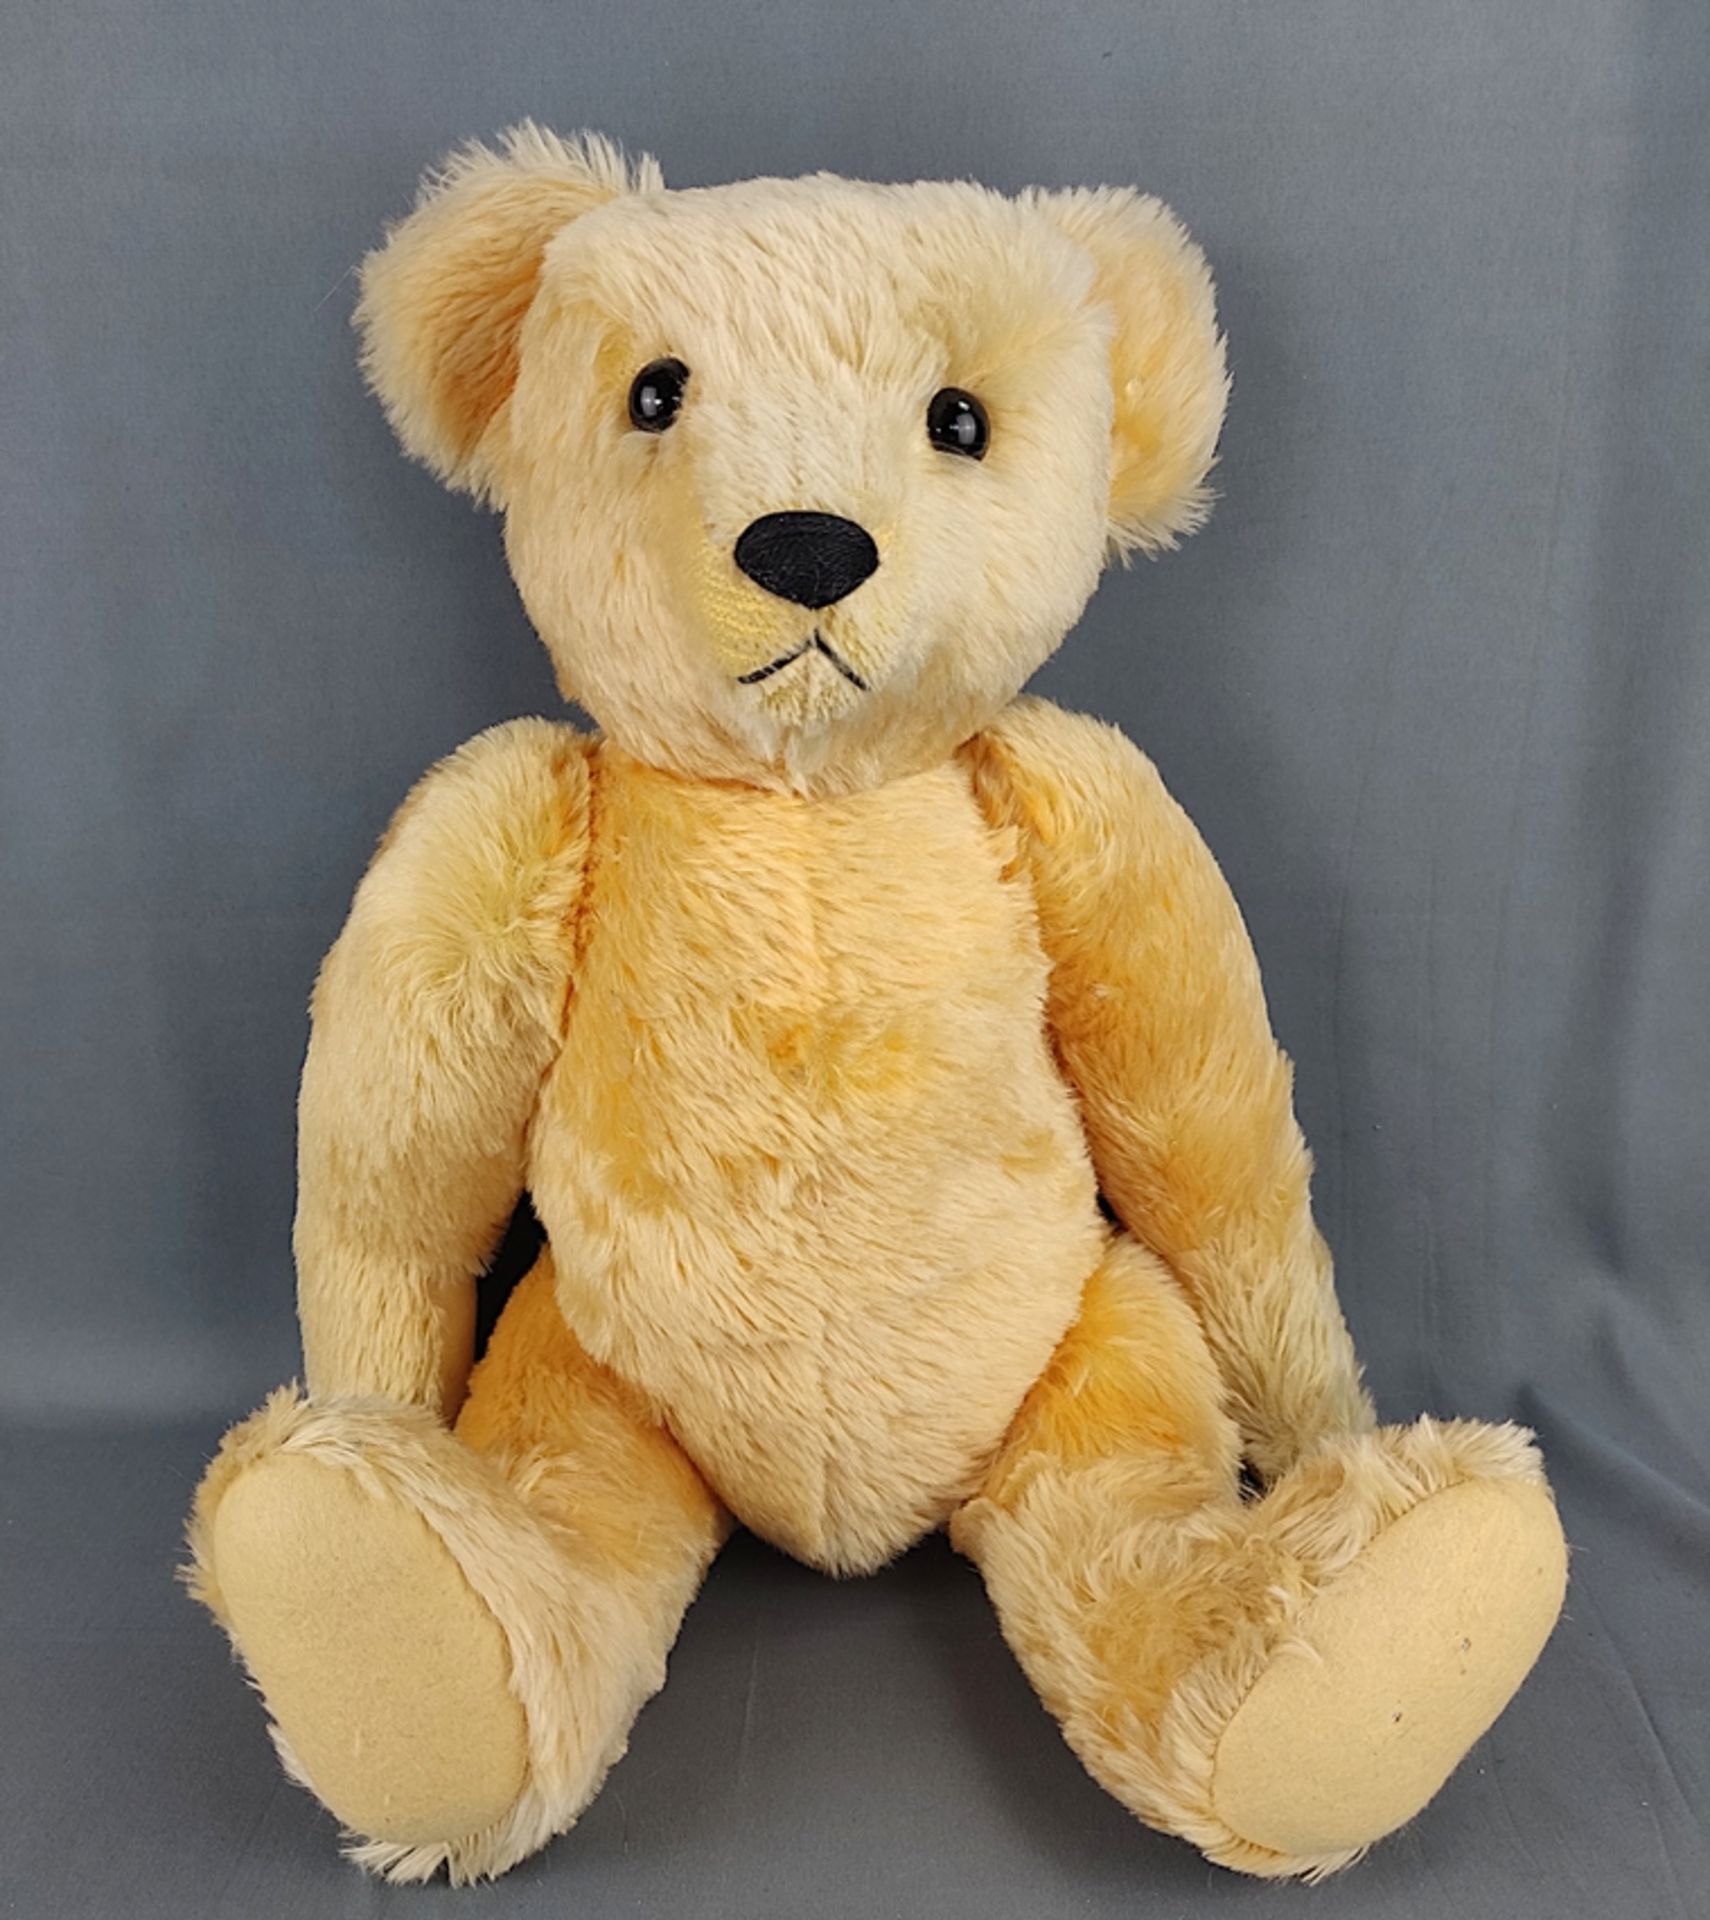 Steiff replica teddy bear "1909", blond 65, limited edition 5000, in original box, flag missing